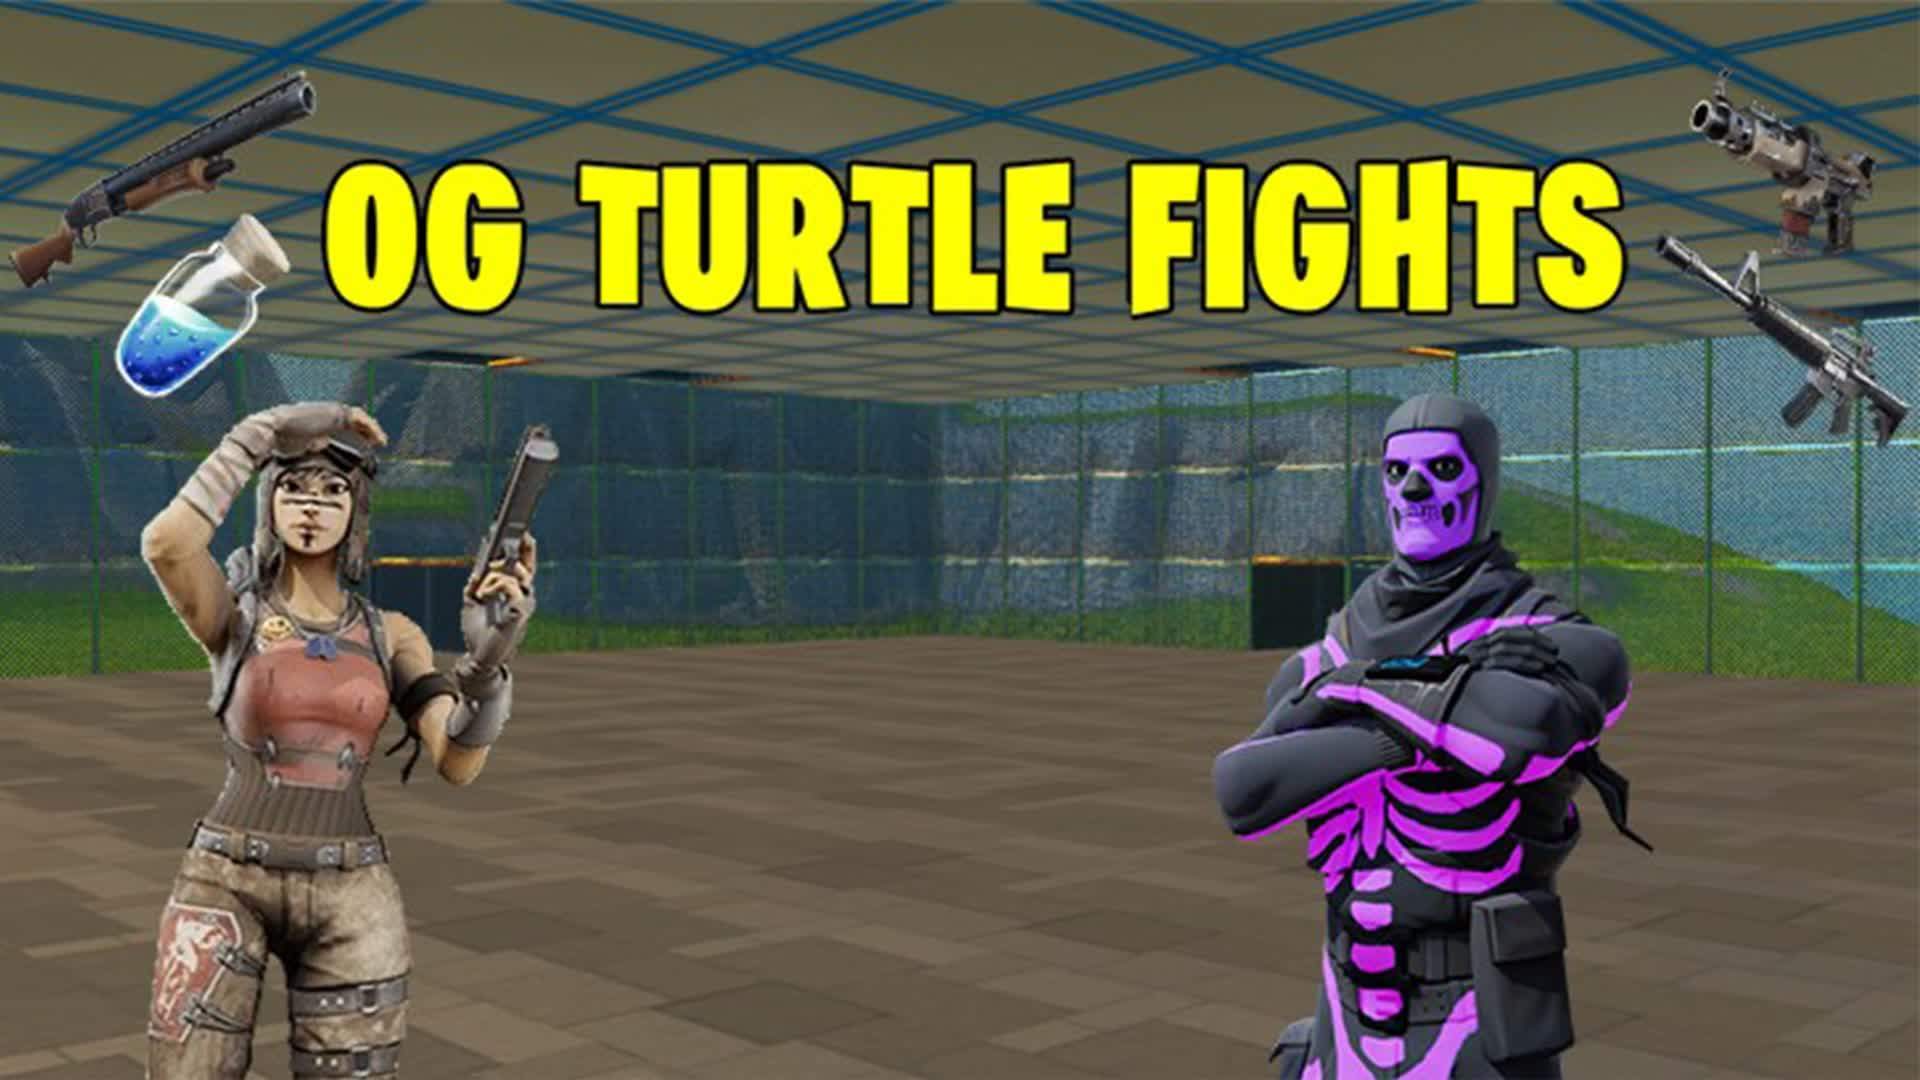 OG Turtle Fights